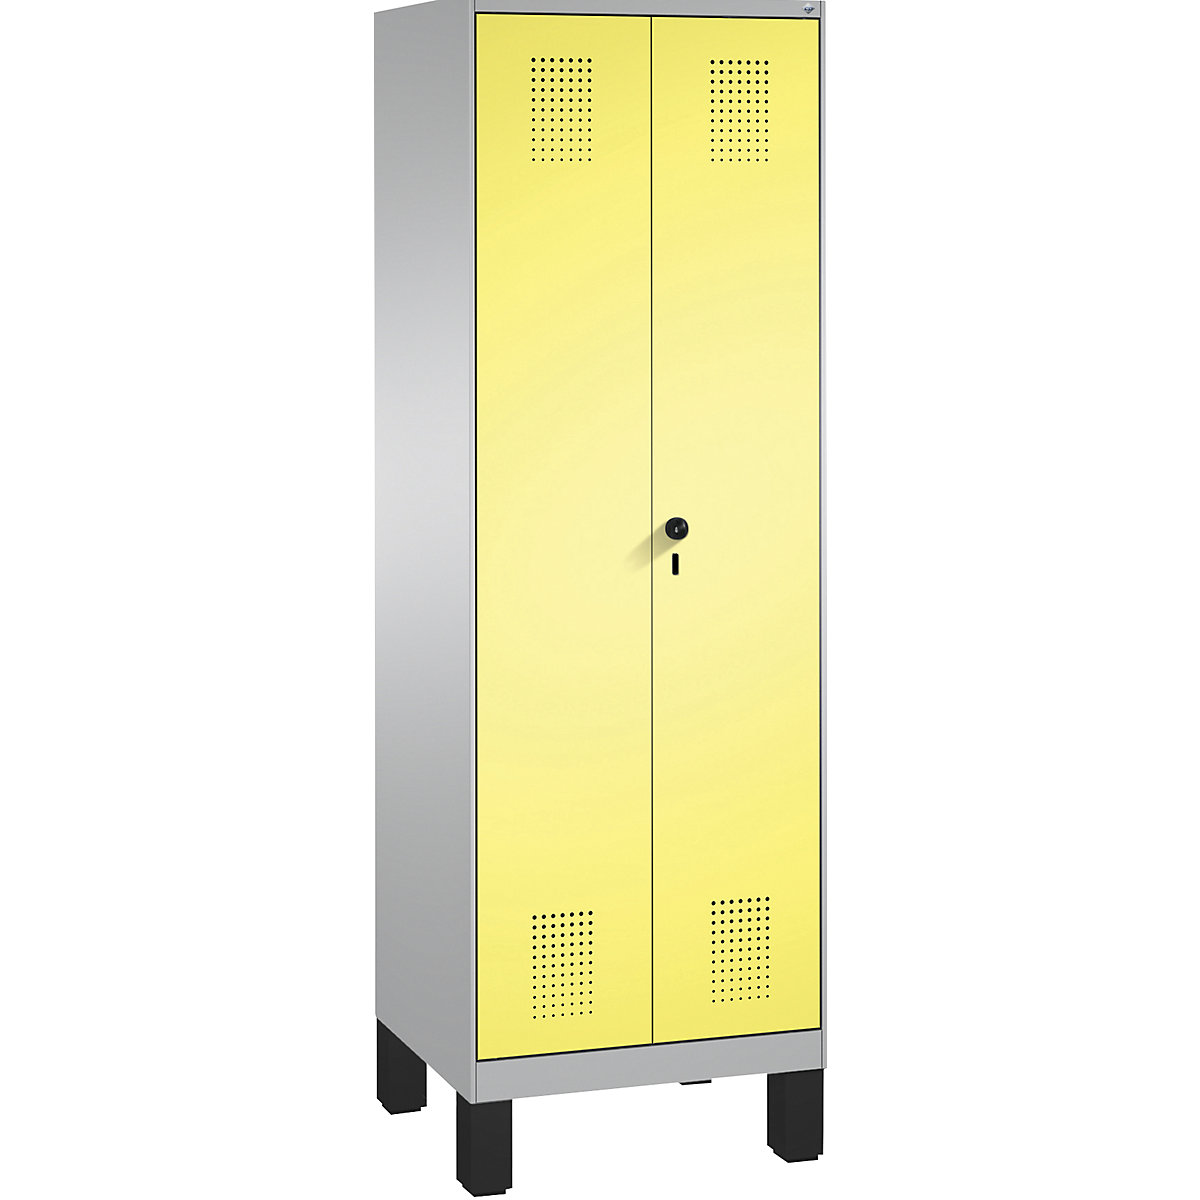 Úklidová/přístrojová skříň EVOLO – C+P, zkrácená dělicí stěna, 6 háků, oddíly 2 x 300 mm, s nohami, bílý hliník / sírová žlutá-10